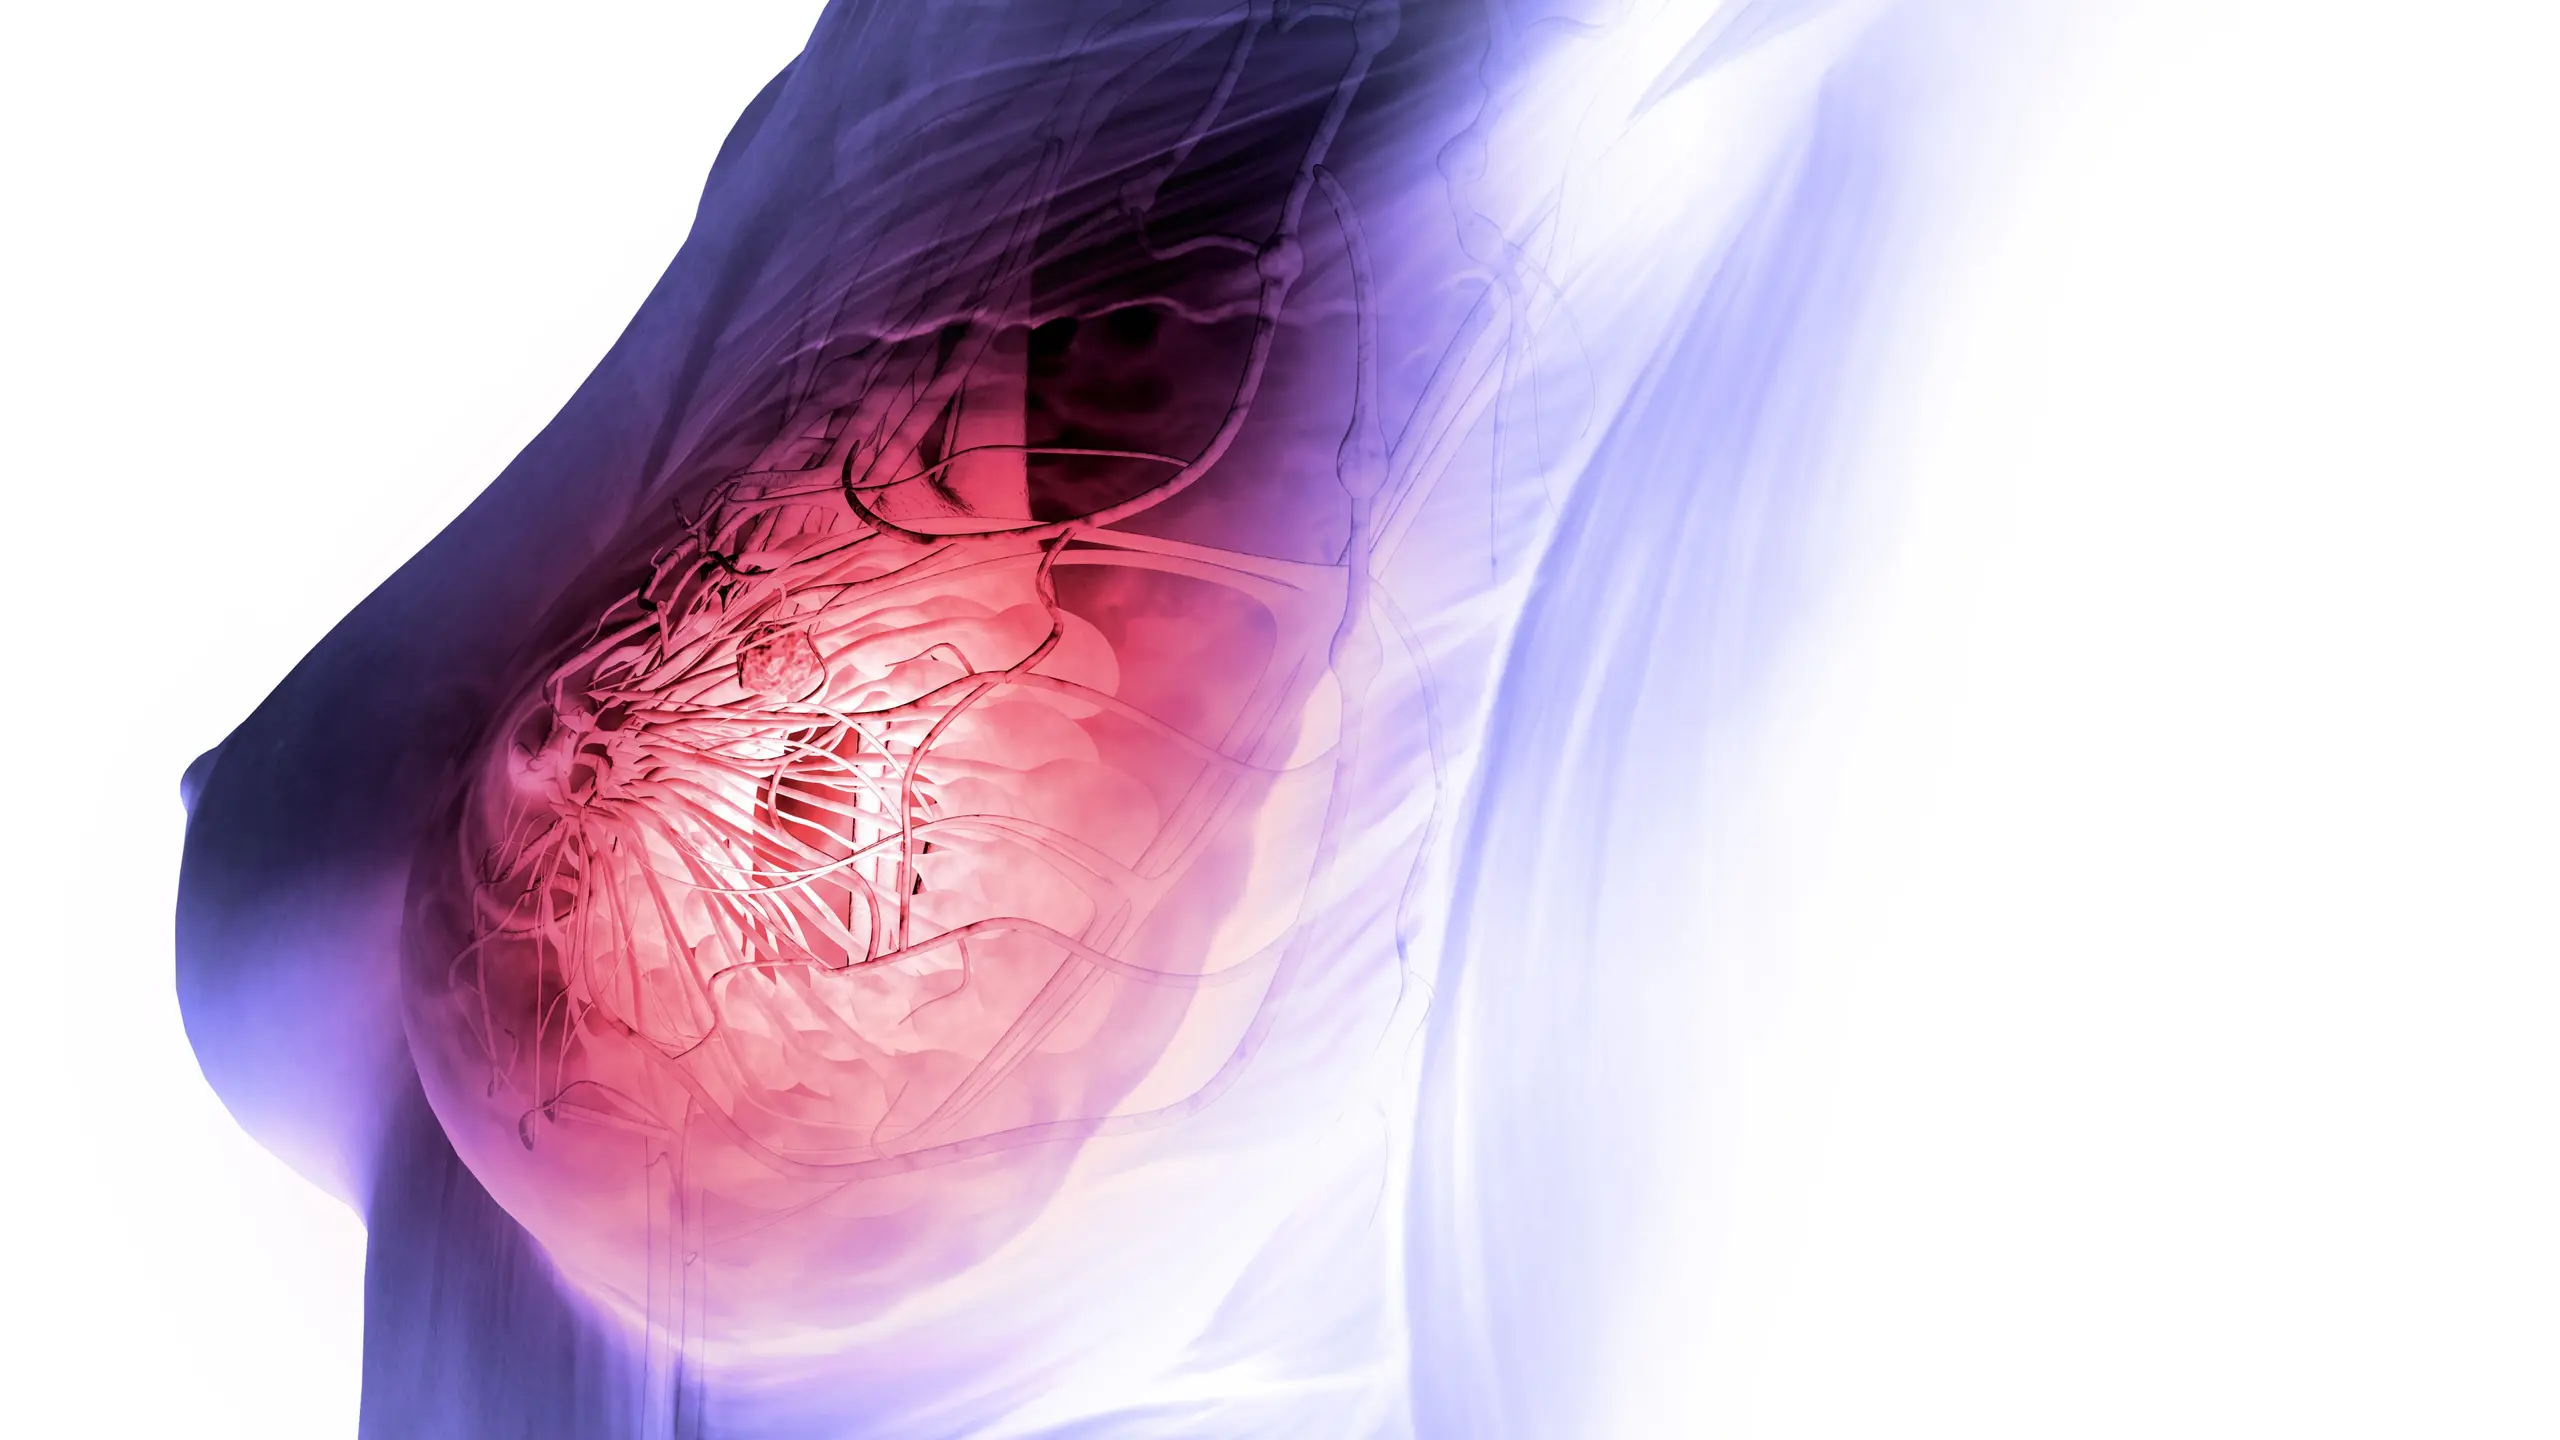 Brustkrebs, die häufigste Krebserkrankung der Frau, entsteht in der Brustdrüse.